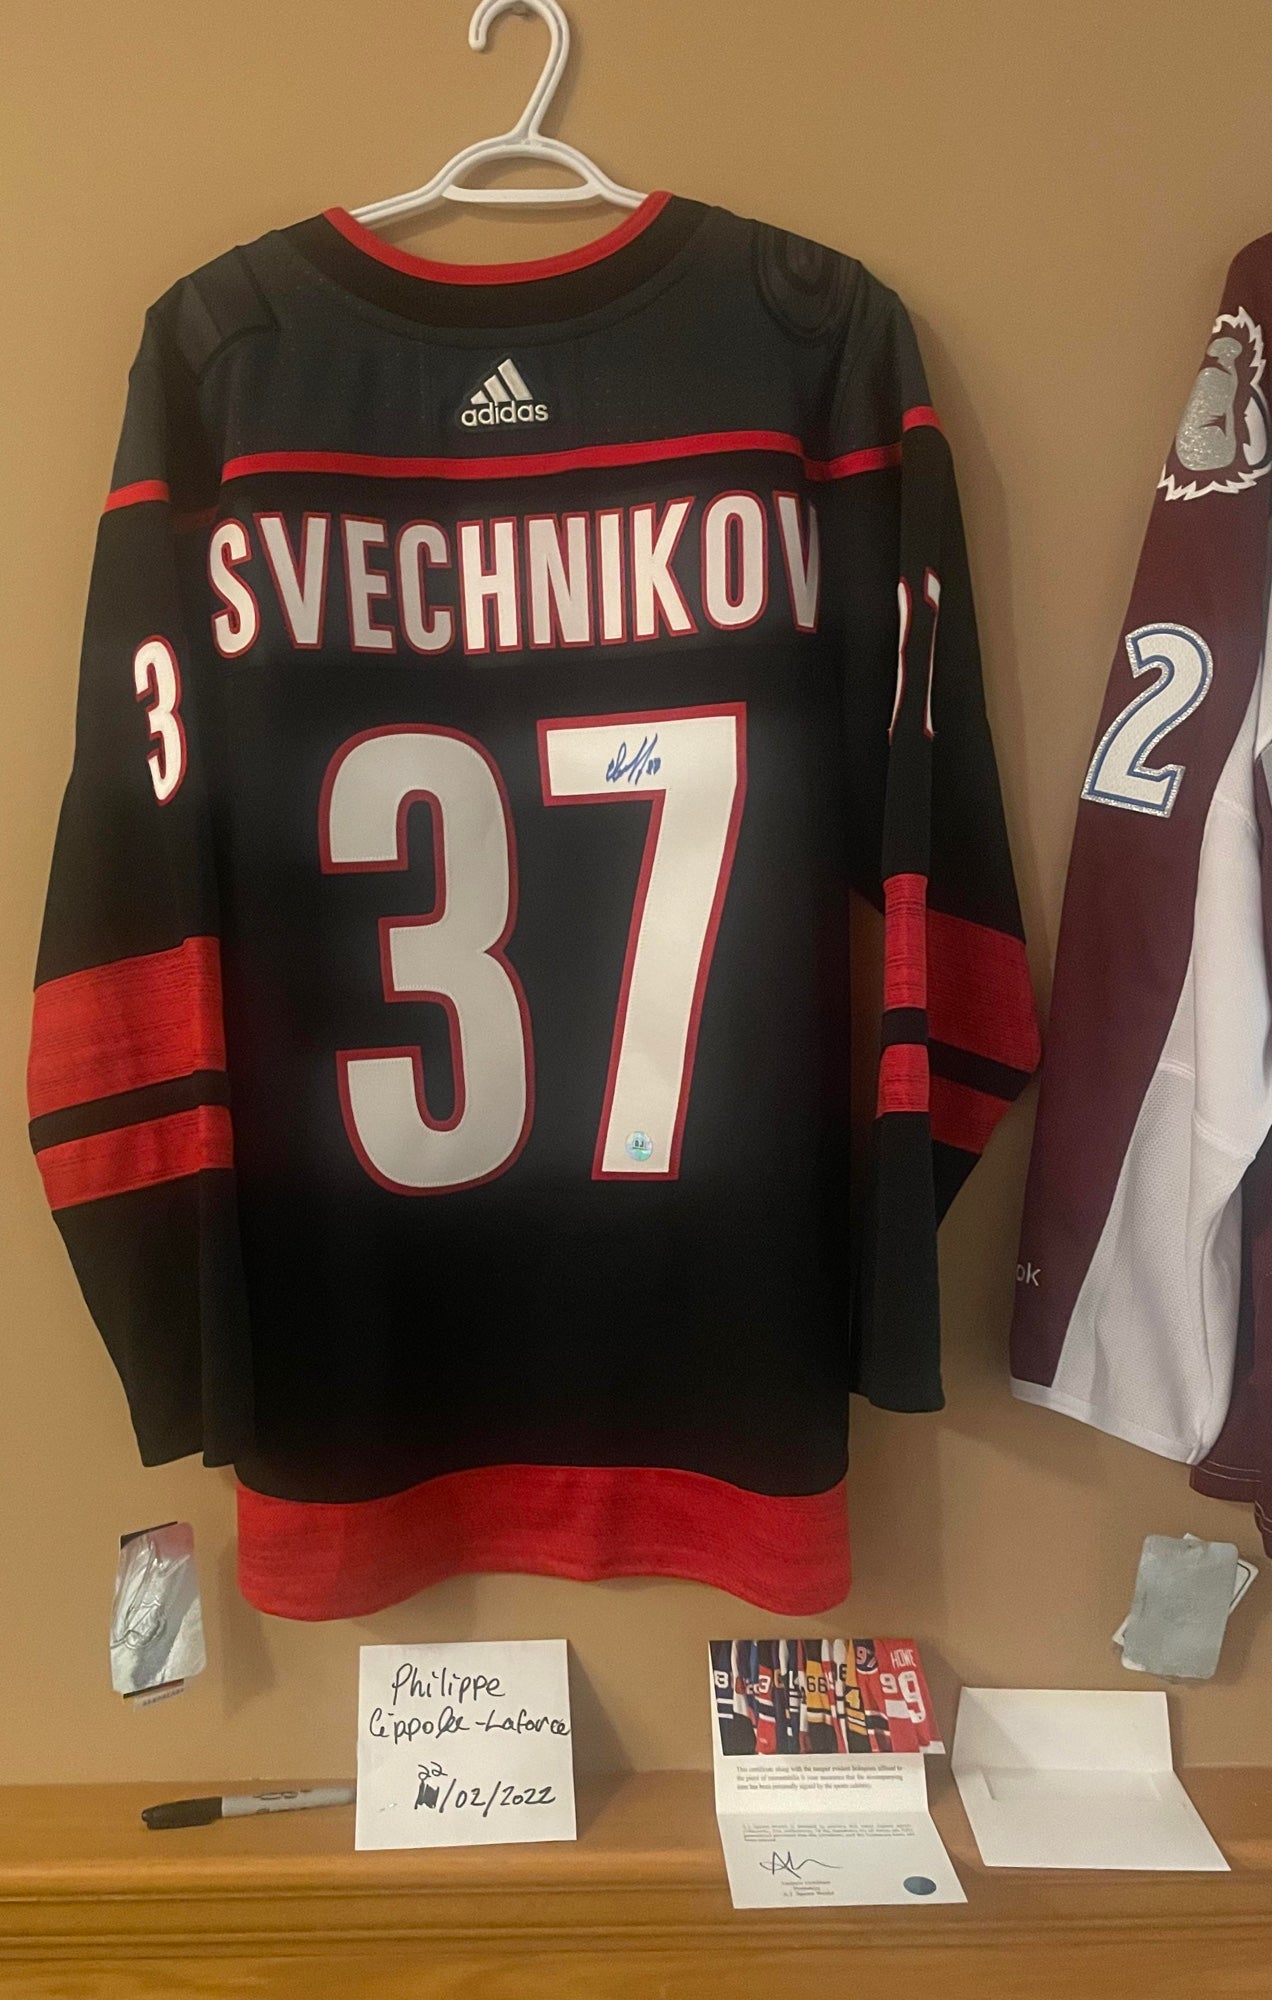 NHL Hurricanes 37 Andrei Svechnikov Black Adidas Men Jersey